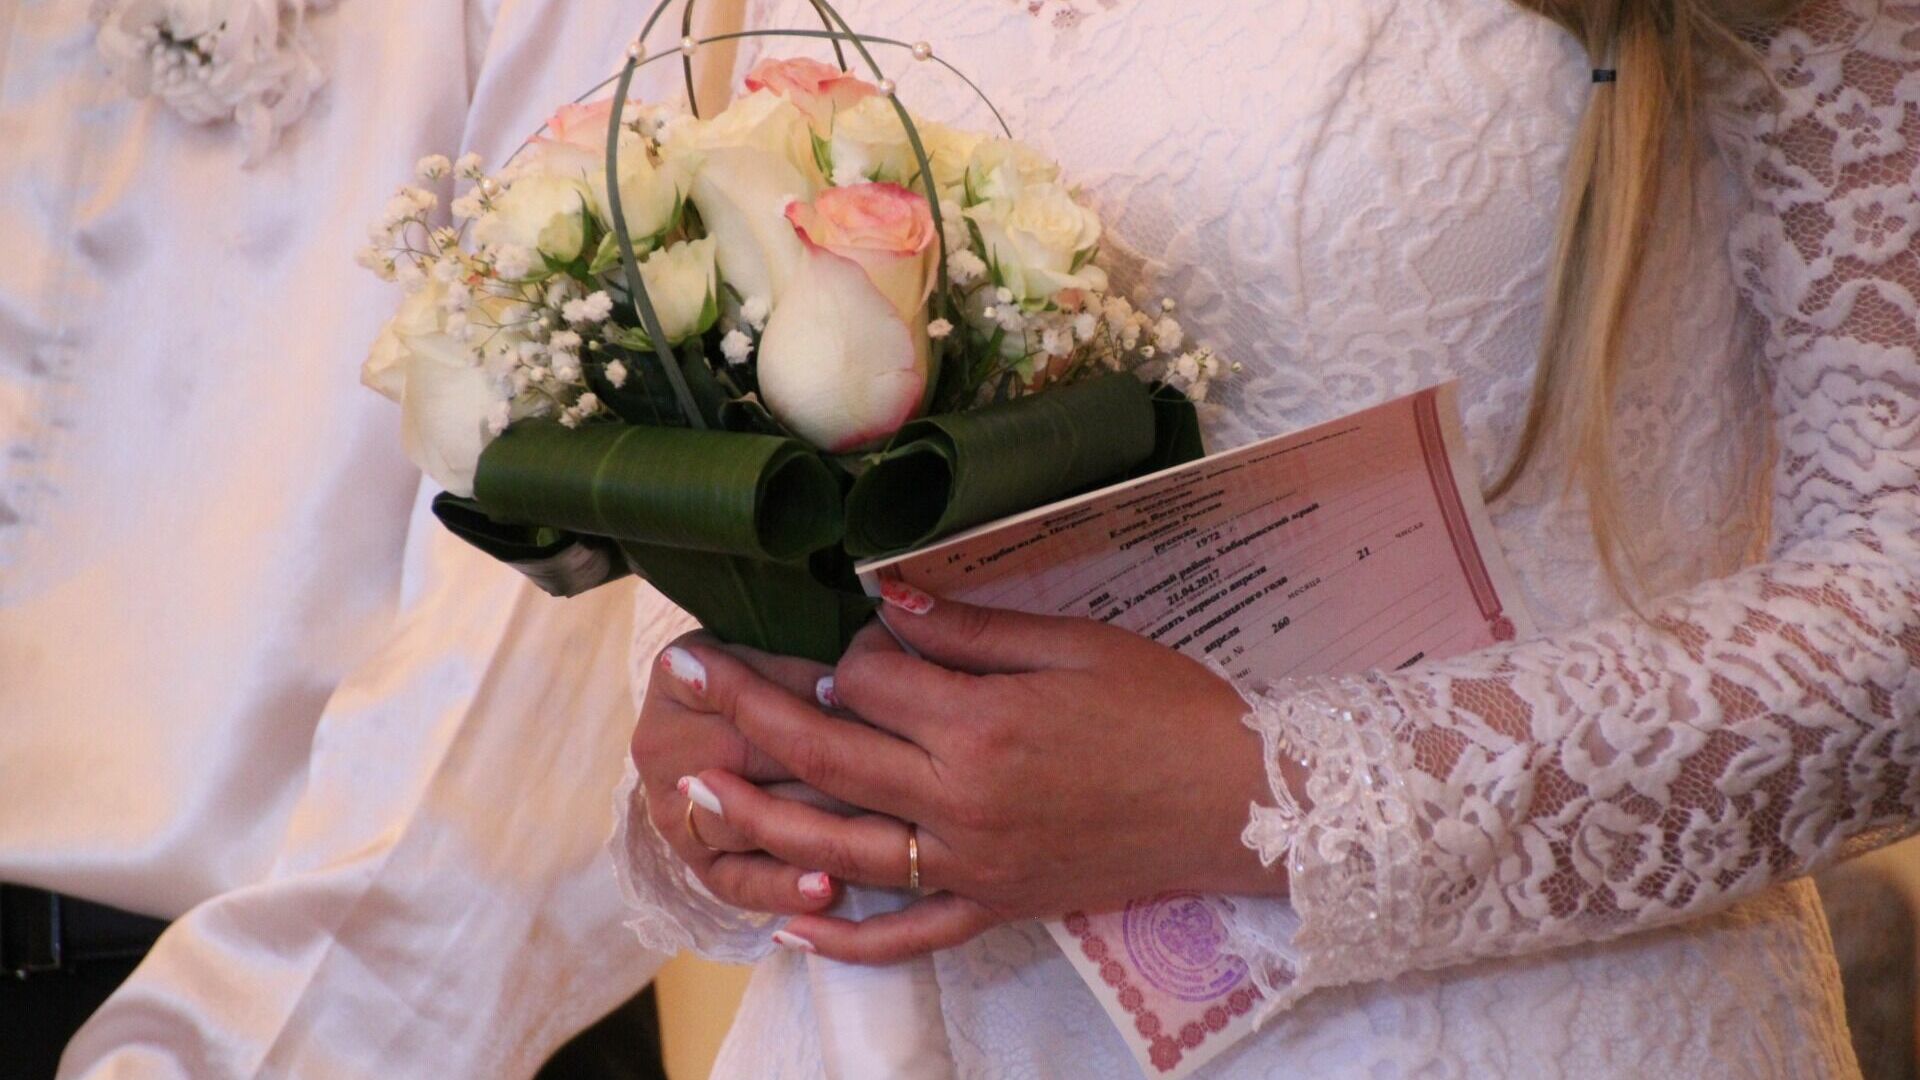 Набережная Везёлки в Белгороде стала популярным местом для регистрации брака